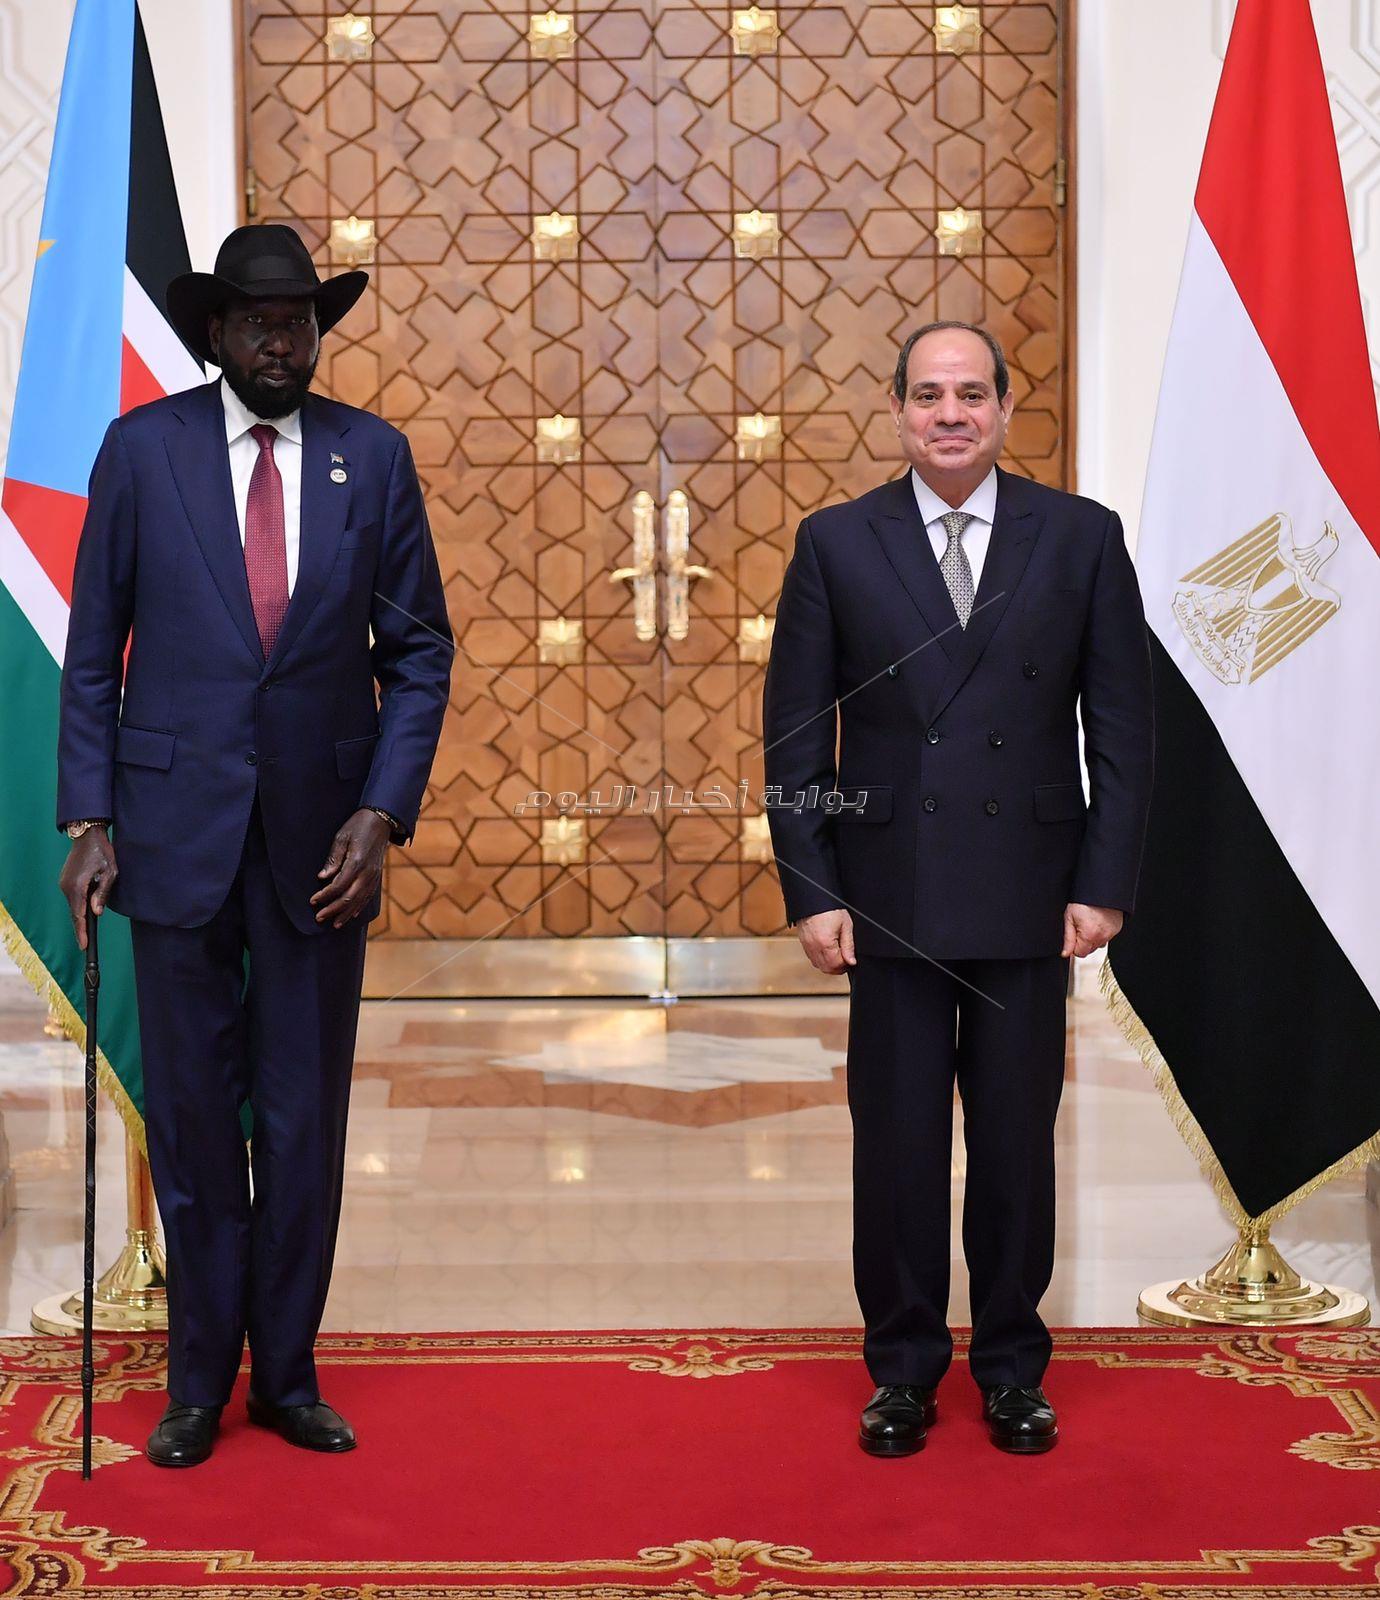 الرئيس السيسي يستقبل رئيس جنوب السودان